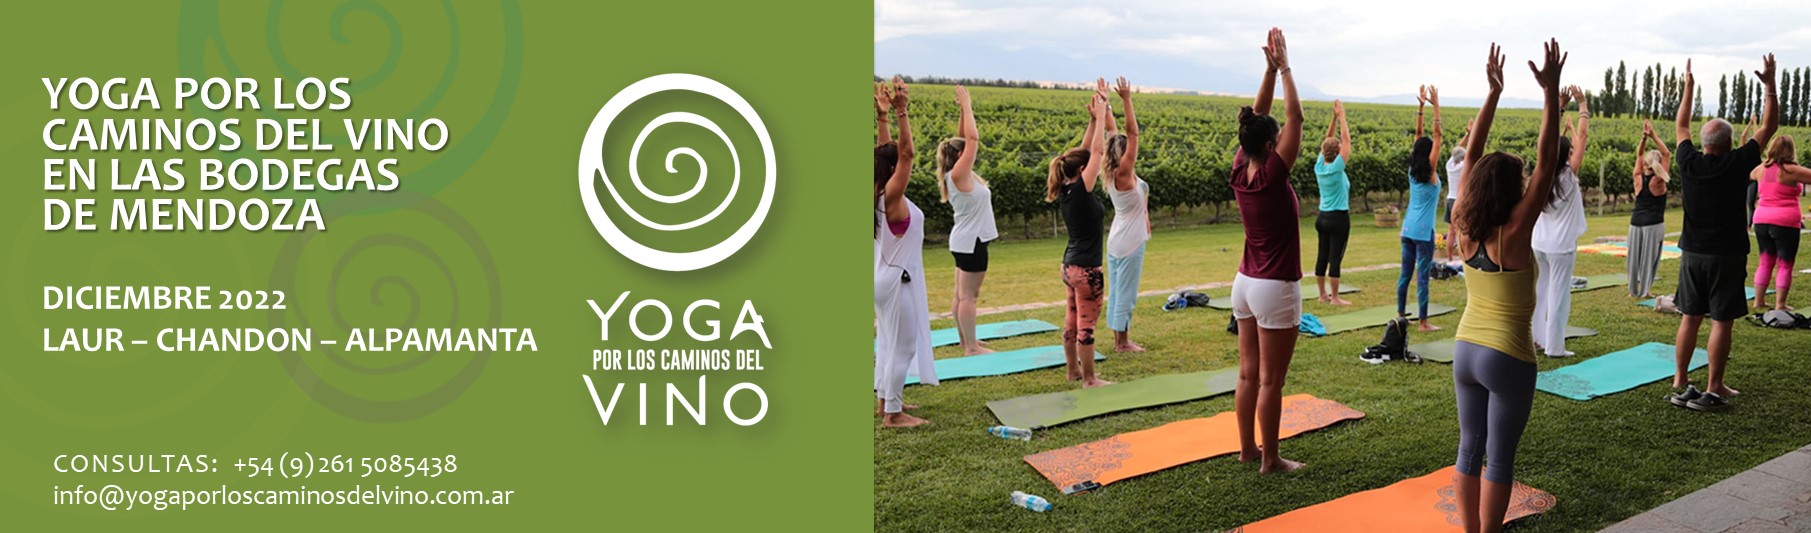 yoga-por-los-caminos-del-vino_YogaCaminosVino-placa-web BANNER WEB